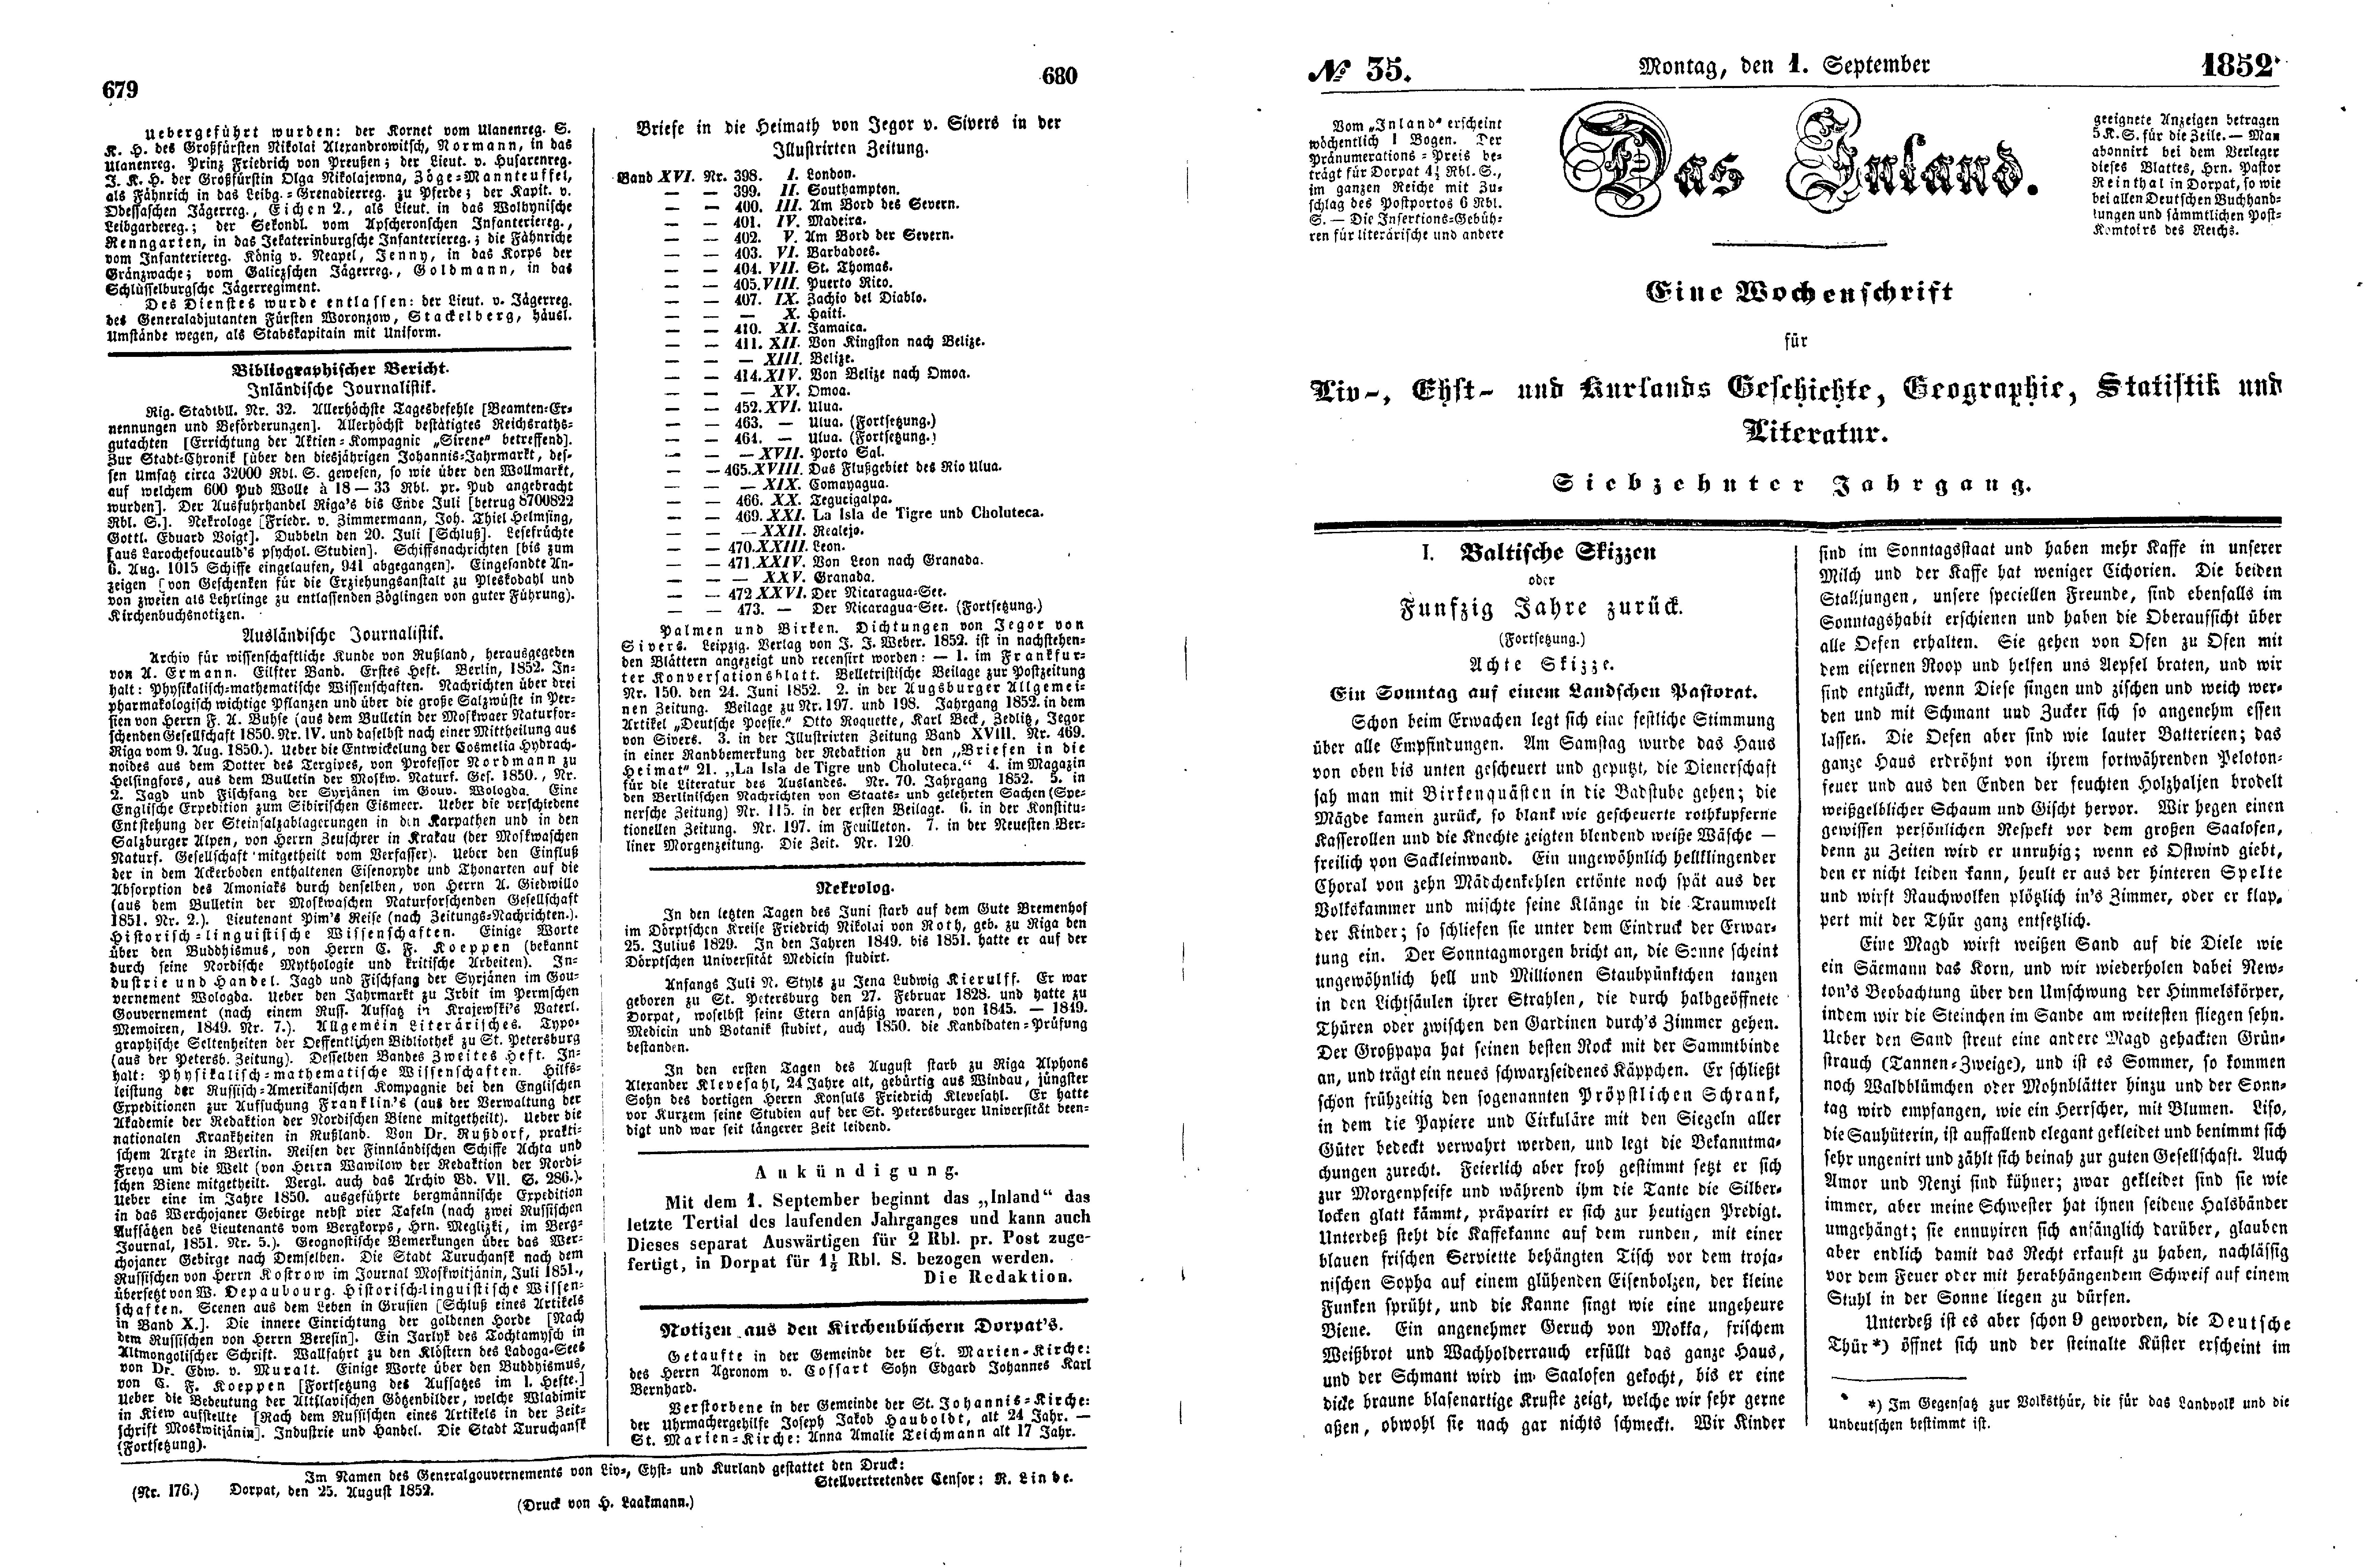 Baltische Skizzen oder Funfzig Jahre zurück [11] (Ein Sonntag auf einem Landschen Pastorat) (1852) | 1. (679-682) Main body of text